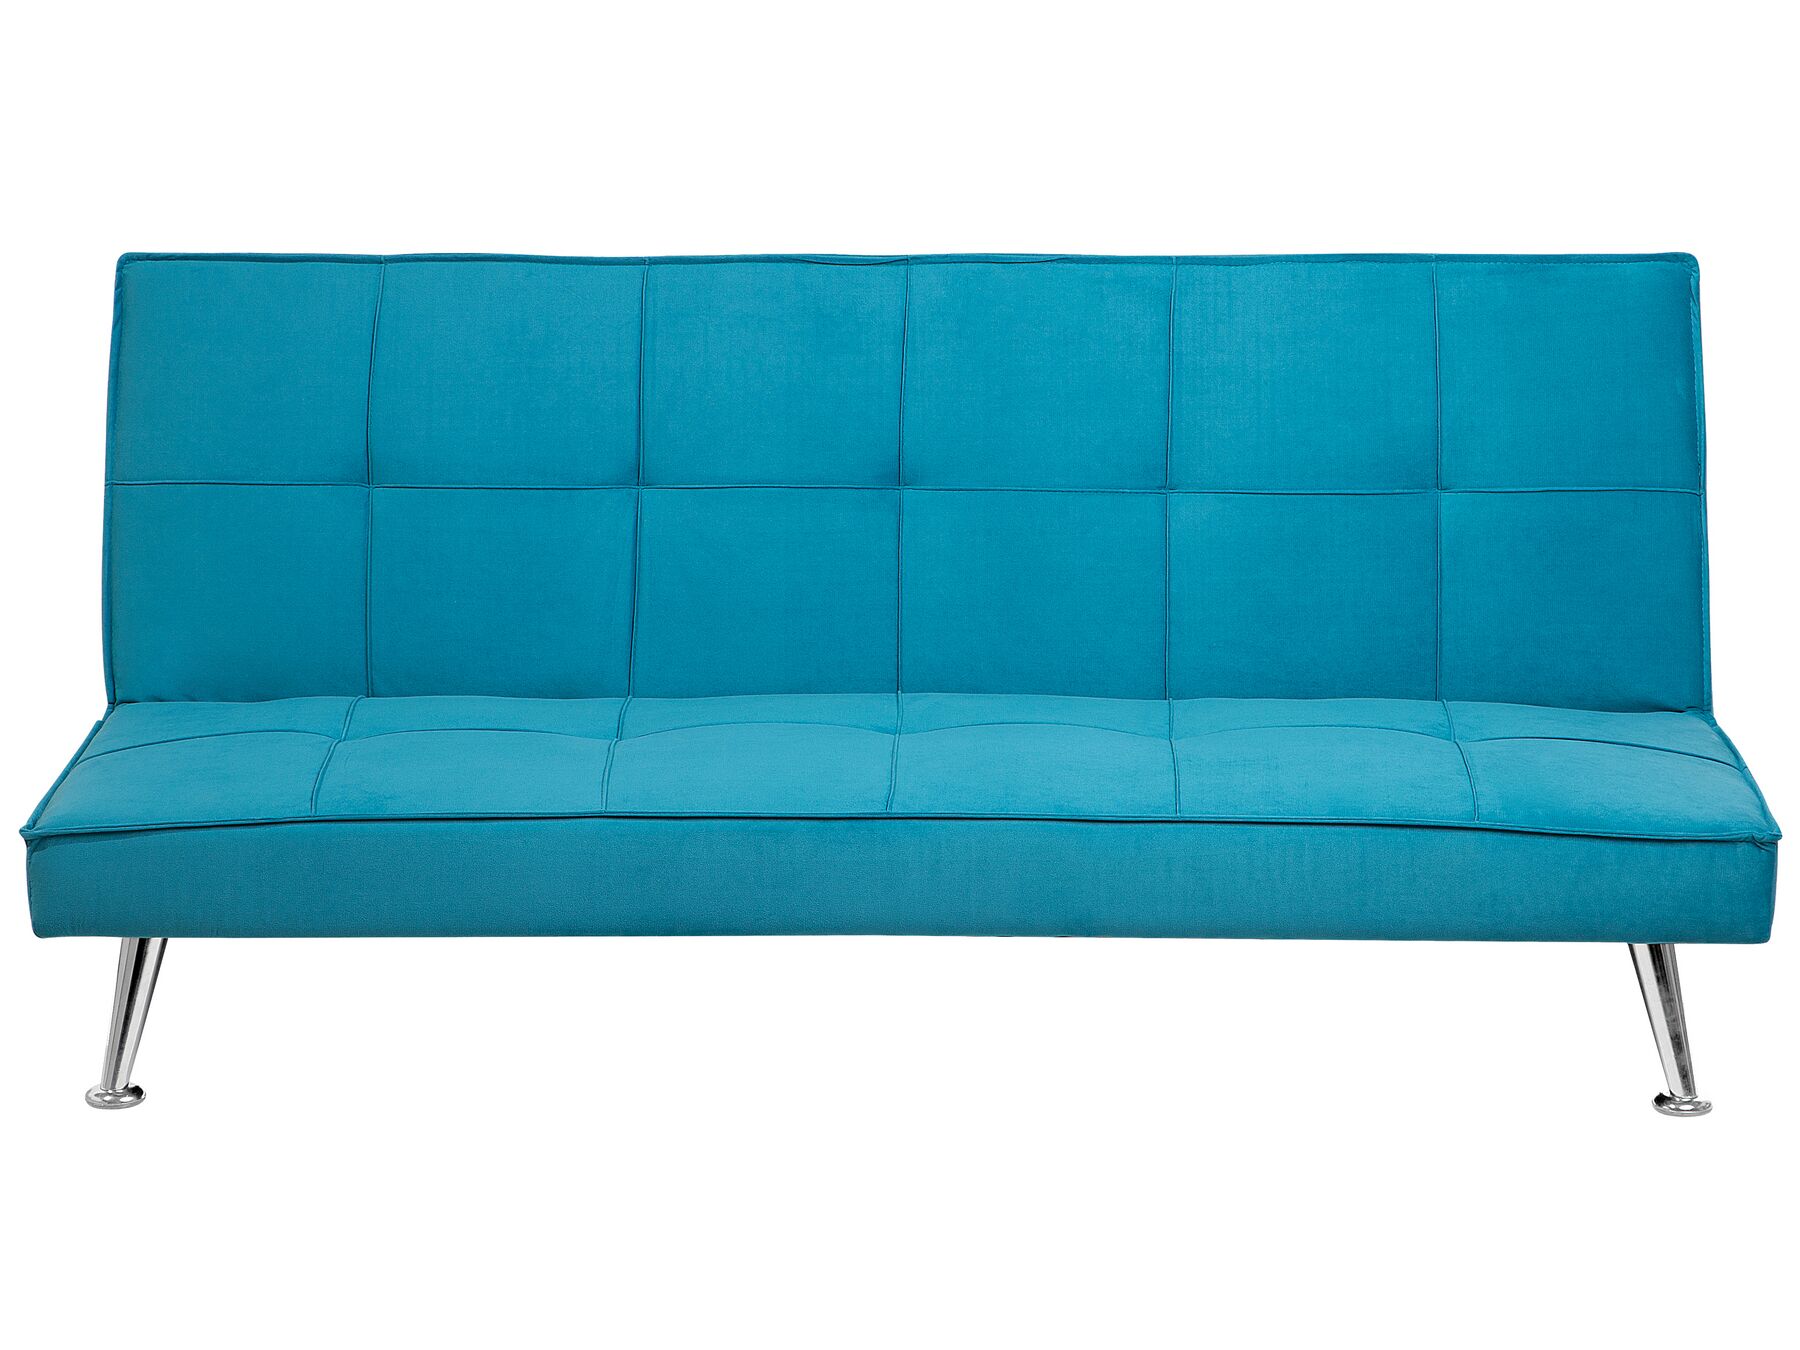 Sofá cama 3 plazas sofá tapizado azul marino HASLE_712438